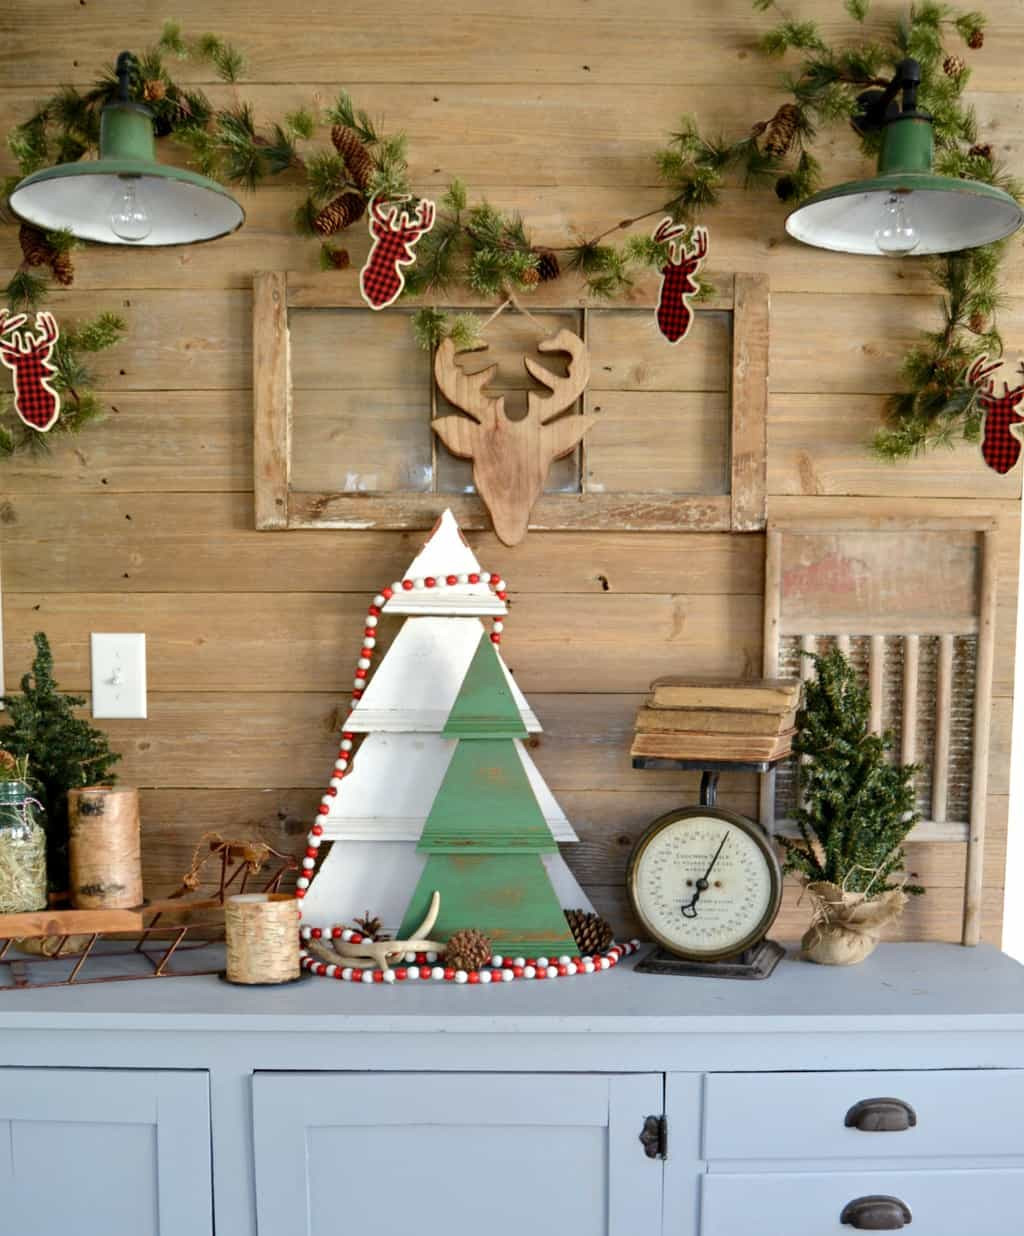 DIY Christmas Tree Decor
 DIY Rustic Wall Christmas Tree To Add Character & Charm To